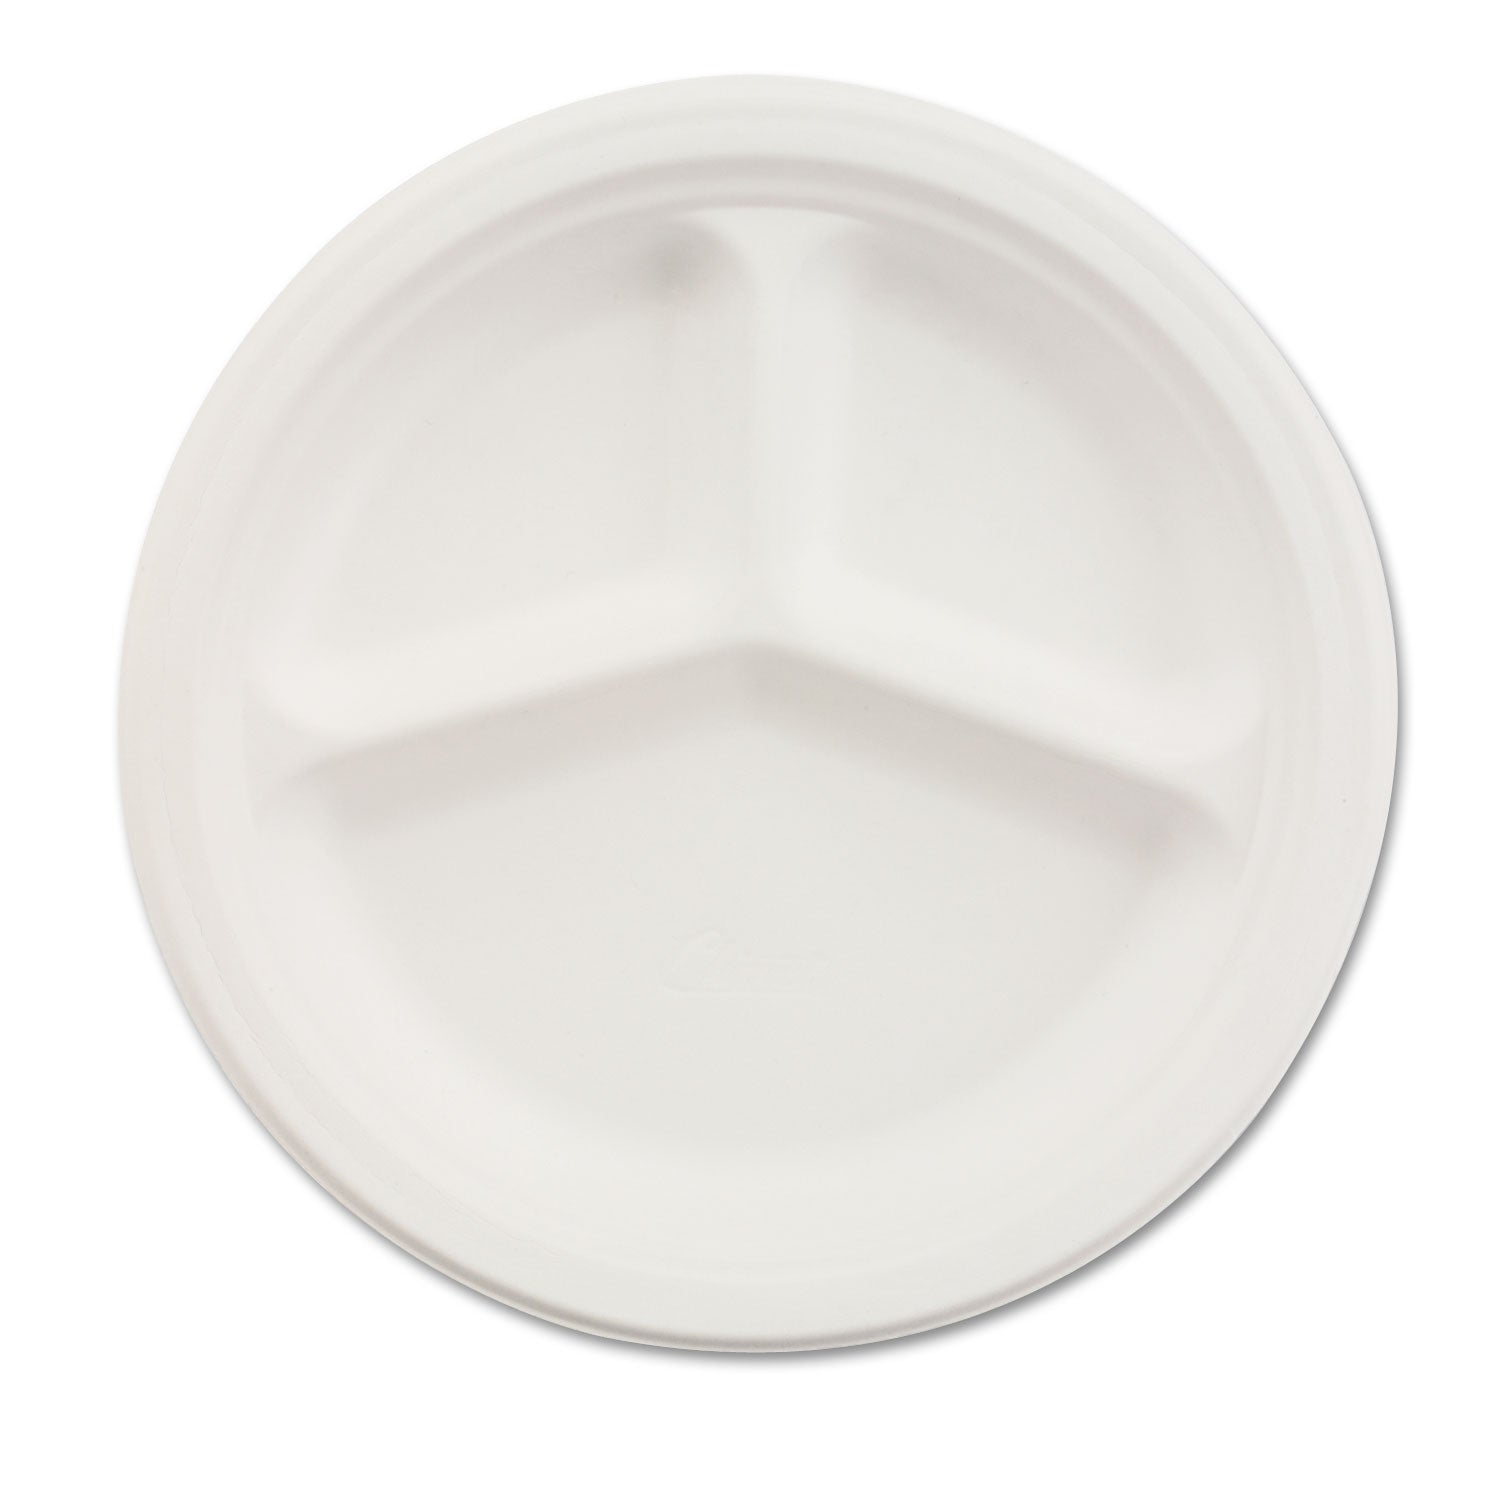 Paper Dinnerware, 3-Compartment Plate, 10.25" dia, White, 500/Carton - 